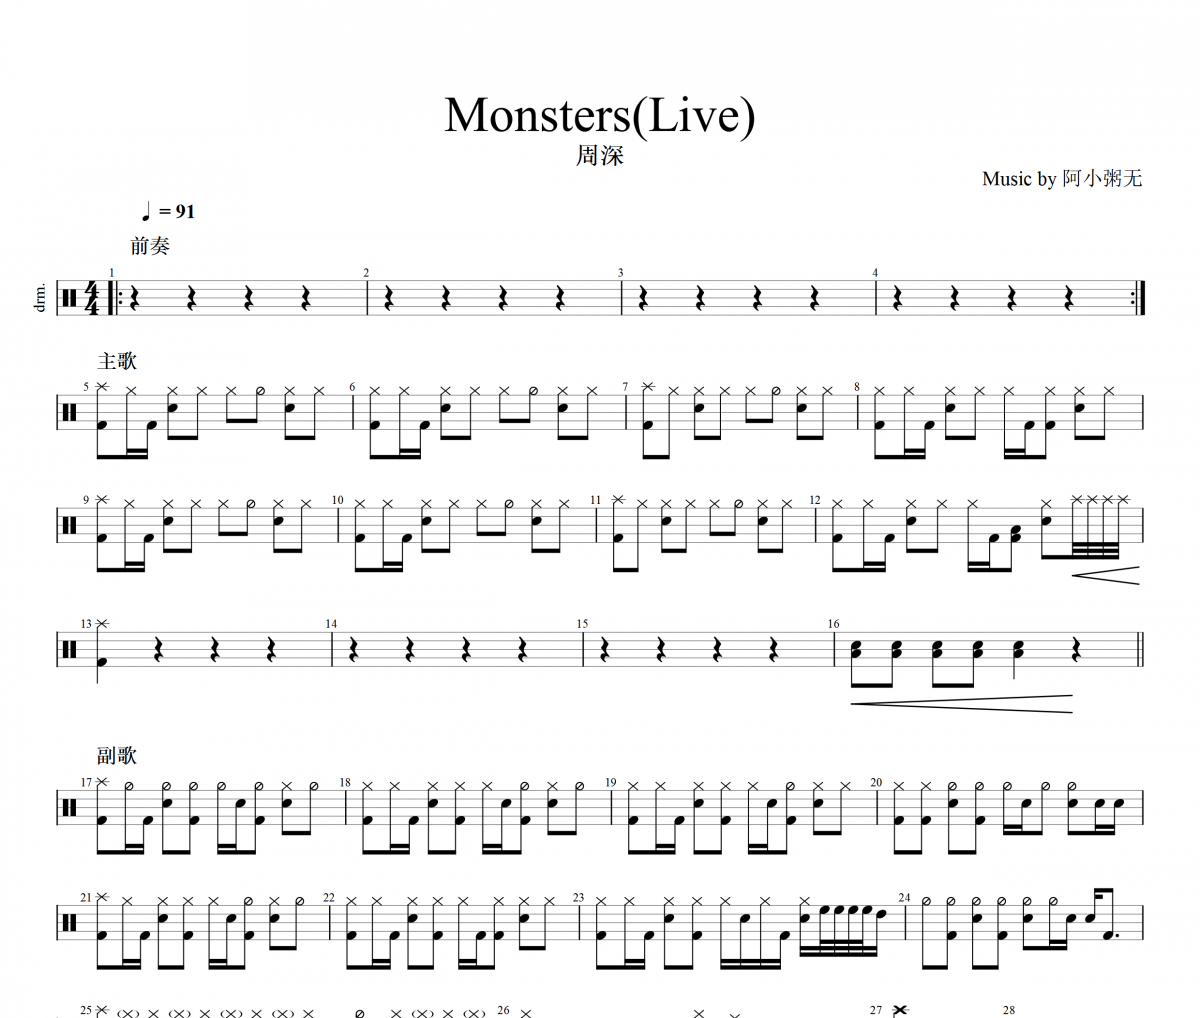 周深-Monster(Live)架子鼓谱爵士鼓曲谱